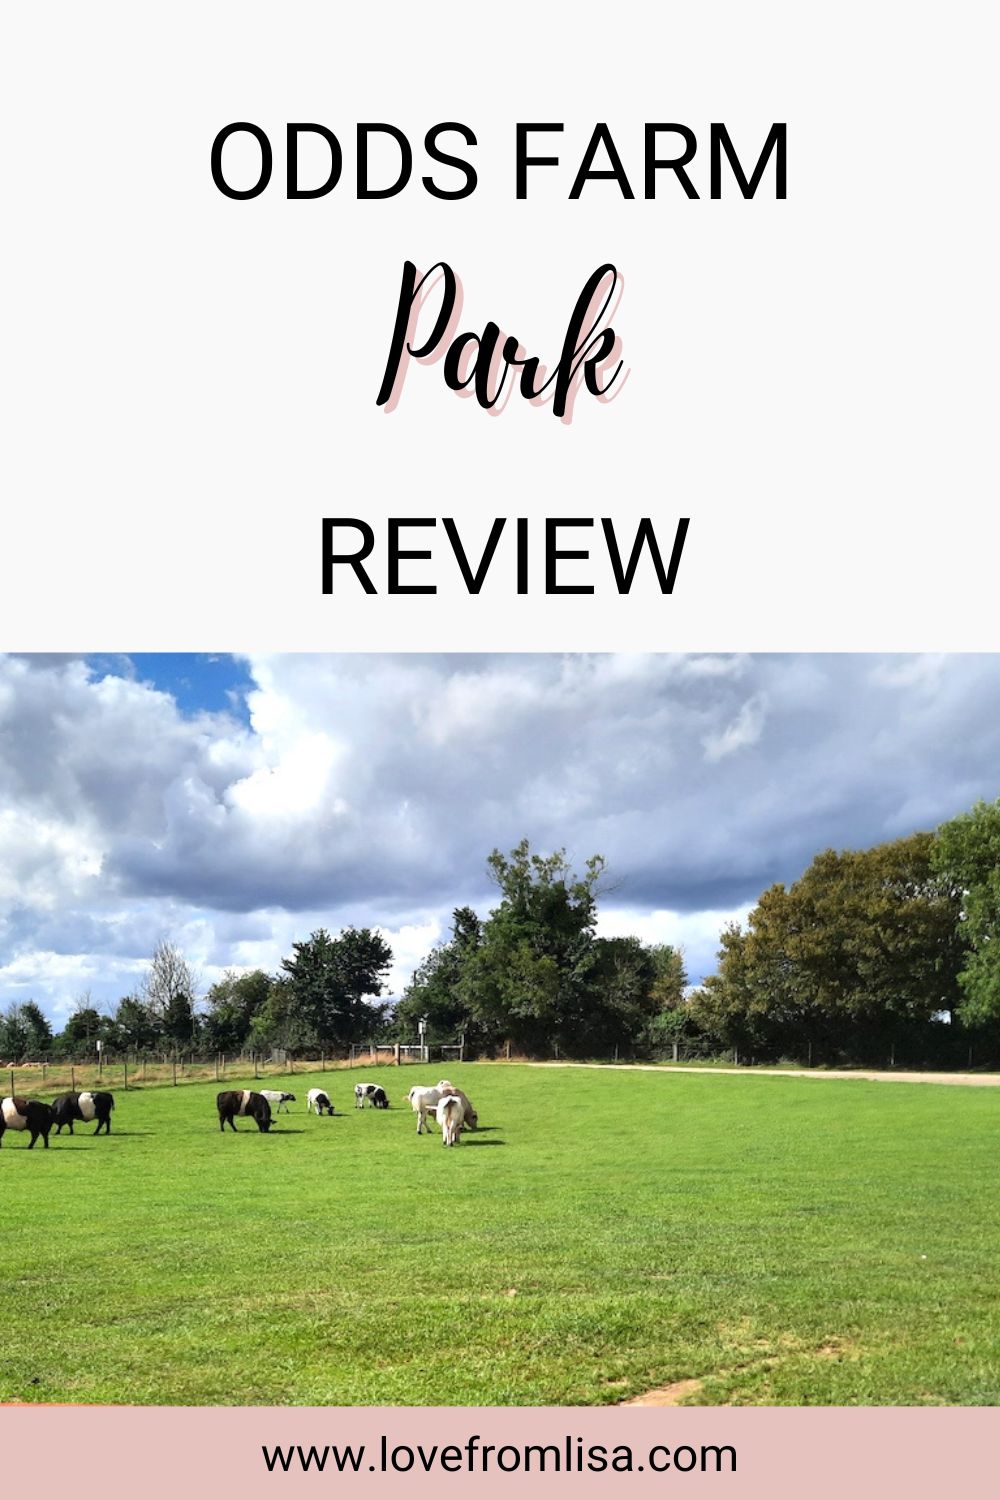 Odds Farm Park Review